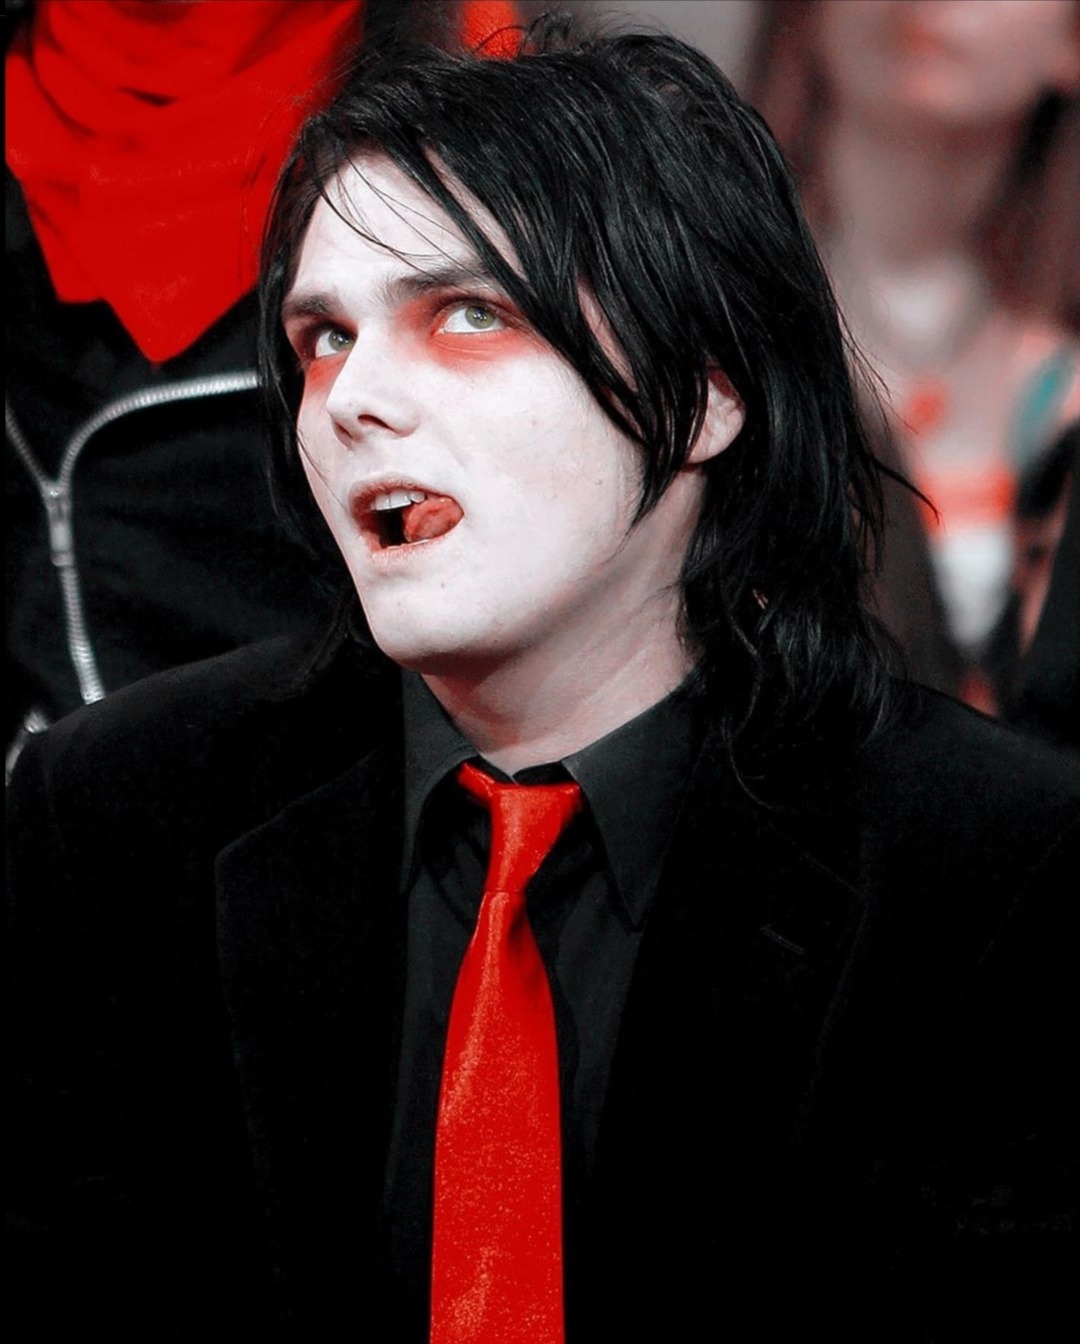 Gerard way vampire